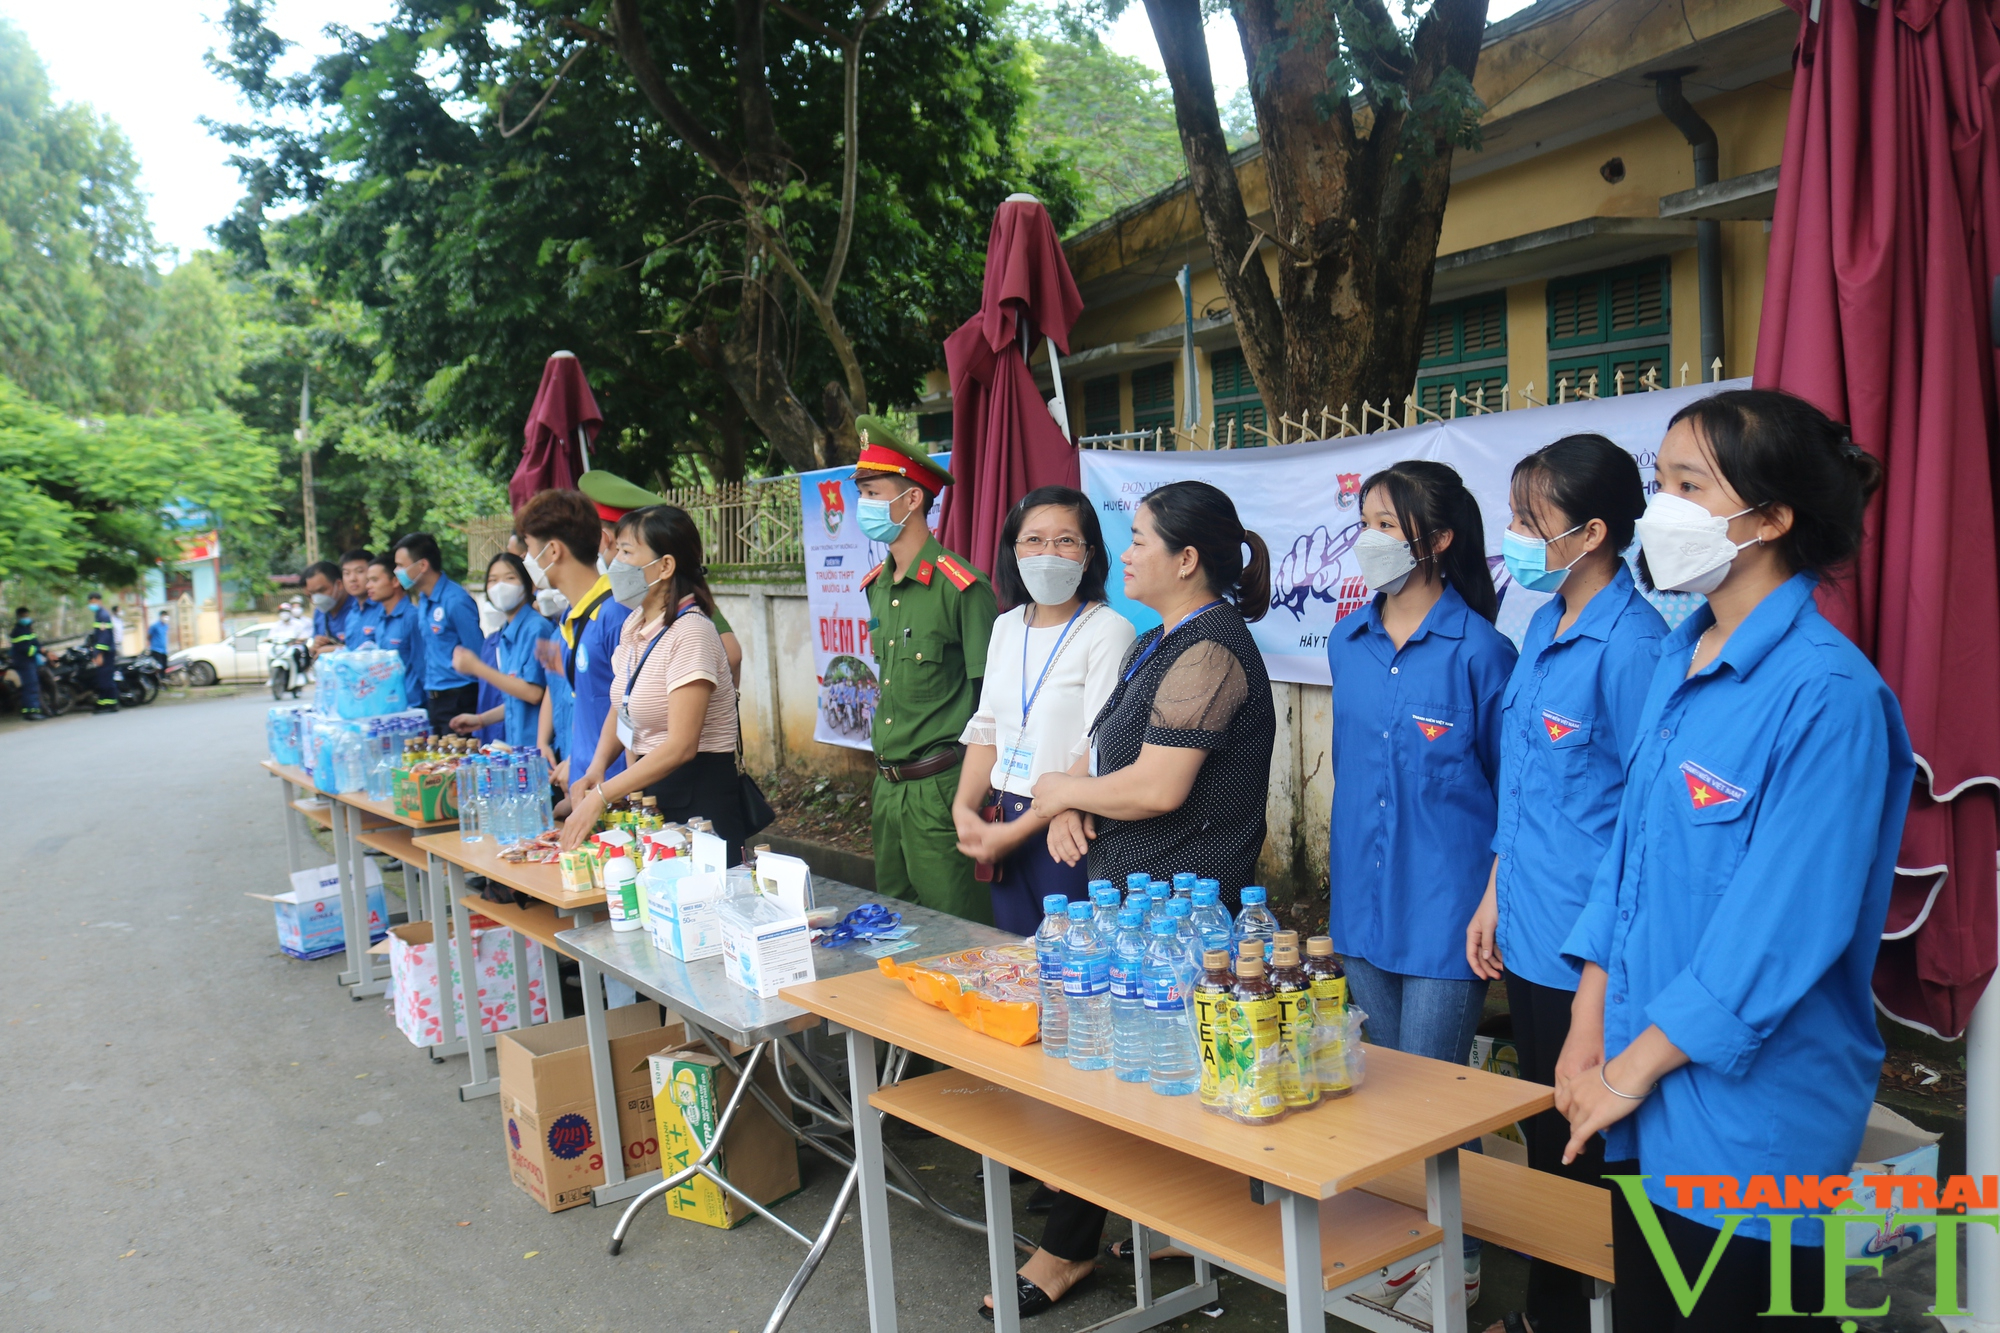 Các thí sinh vùng cao Sơn La hoàn thành 2 môn thi tốt nghiệp THPT năm 2022 trong ngày nắng nóng - Ảnh 2.